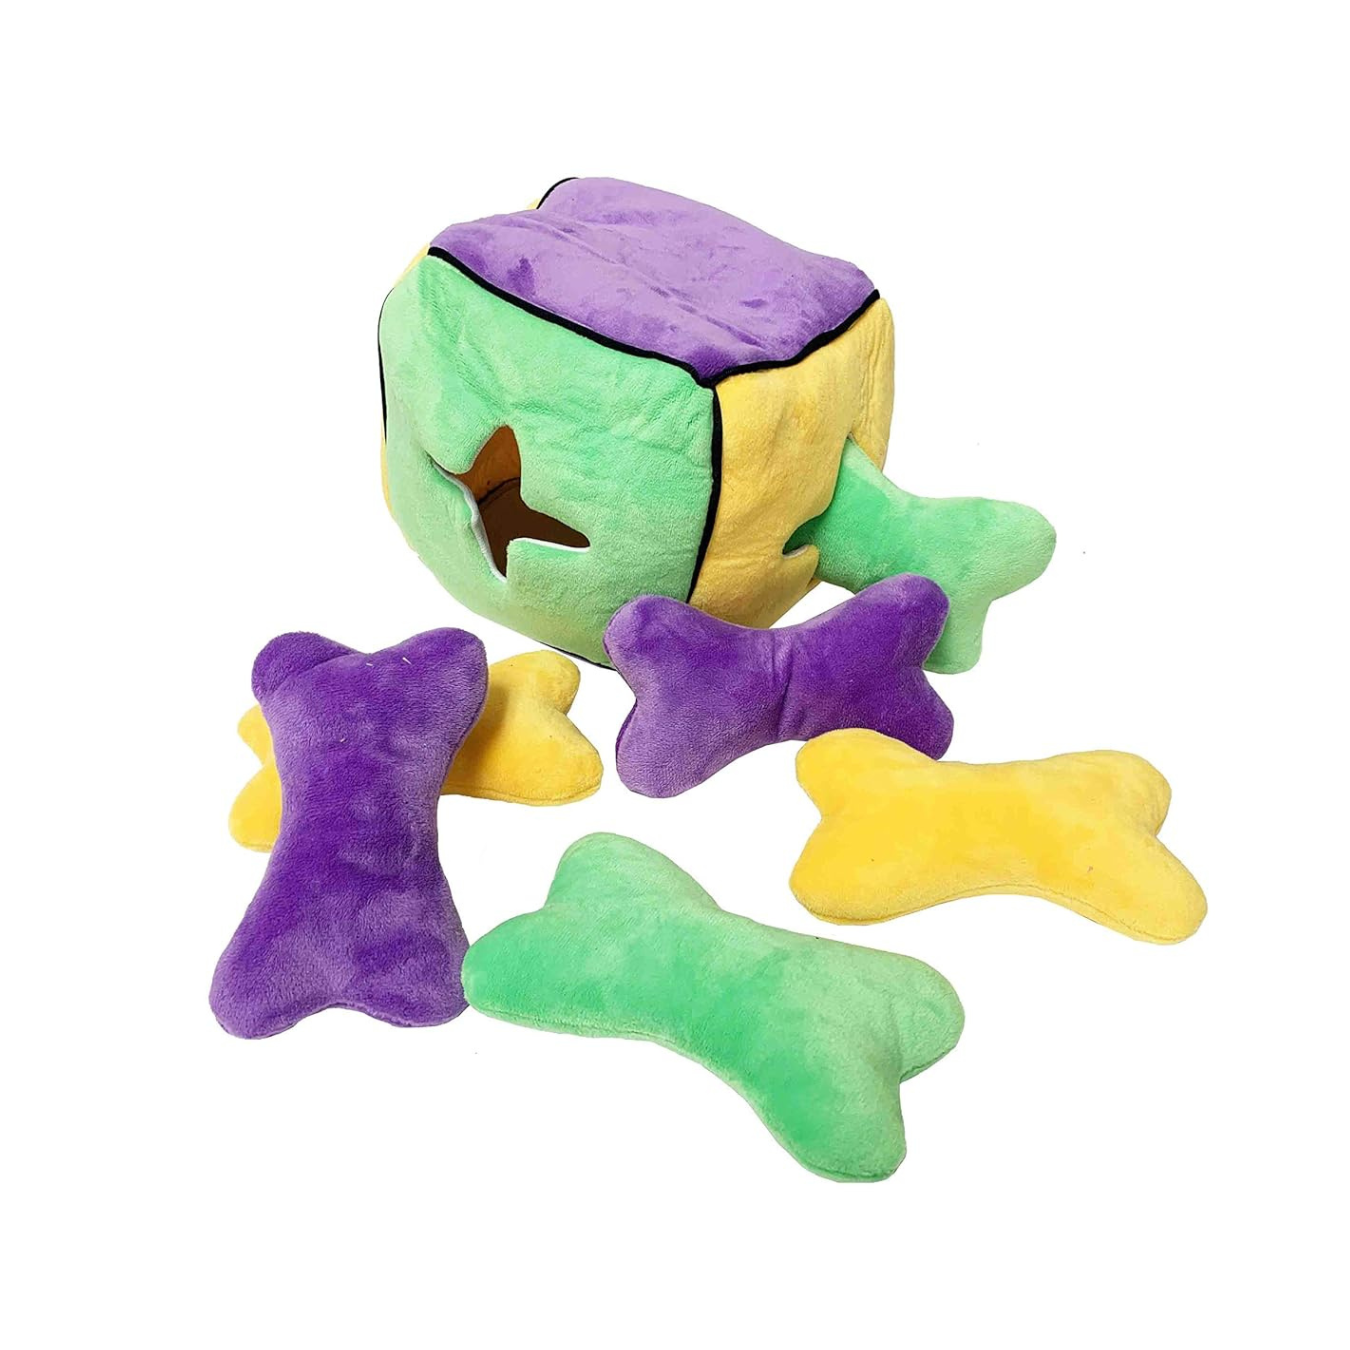 Midlee Plush Find a Bone Cube Dog Toy